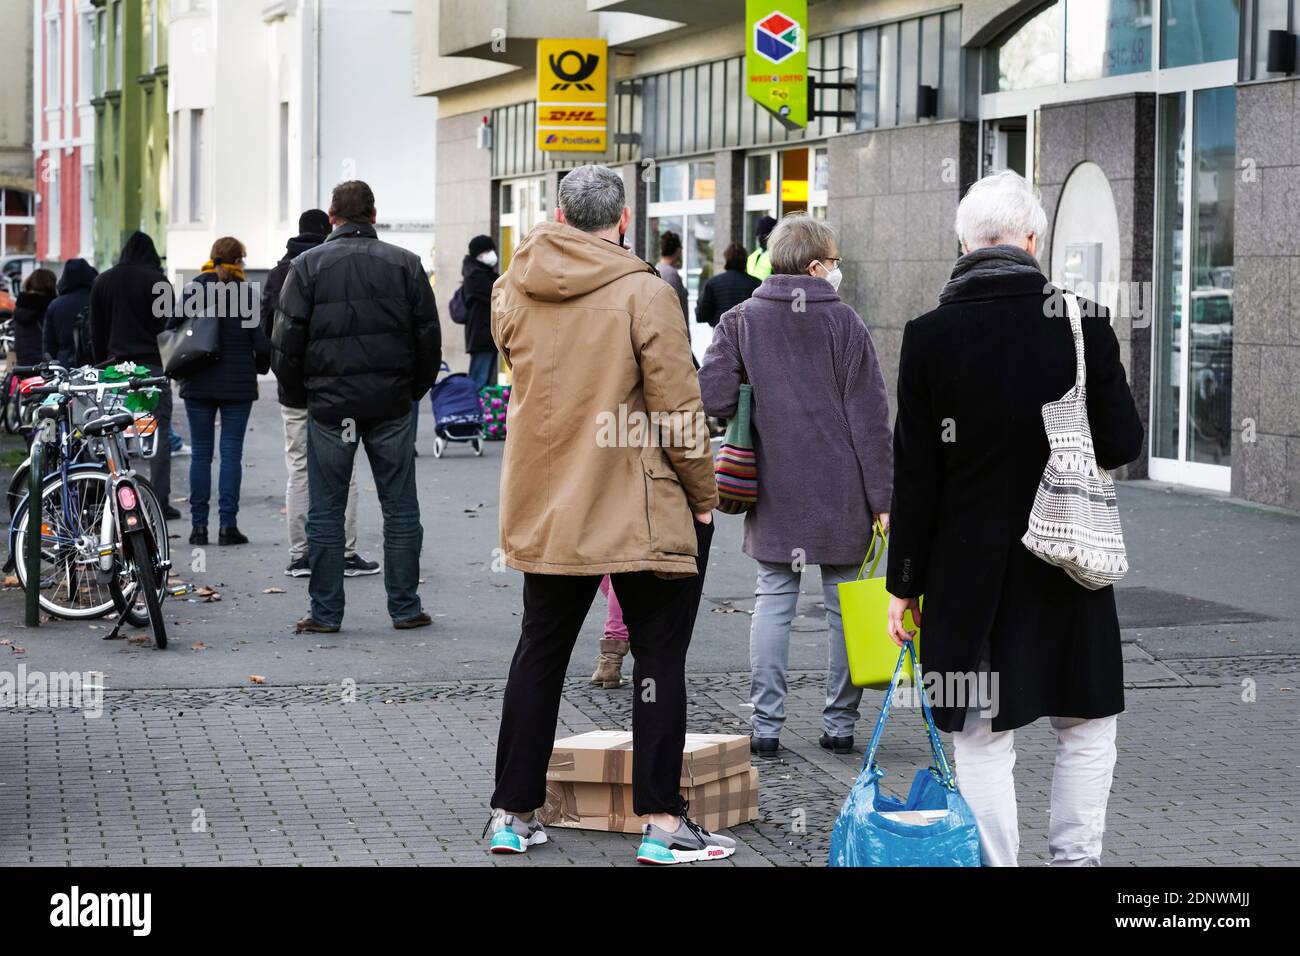 Dortmund, Germania, 18 dicembre 2020: I clienti aspettano sul marciapiede di fronte ad una filiale di Deutsche Post/DHL a Dortmund. A causa delle limitazioni del secondo blocco della pandemia corona, solo 3 clienti sono autorizzati a rimanere in questa filiale contemporaneamente. Foto Stock